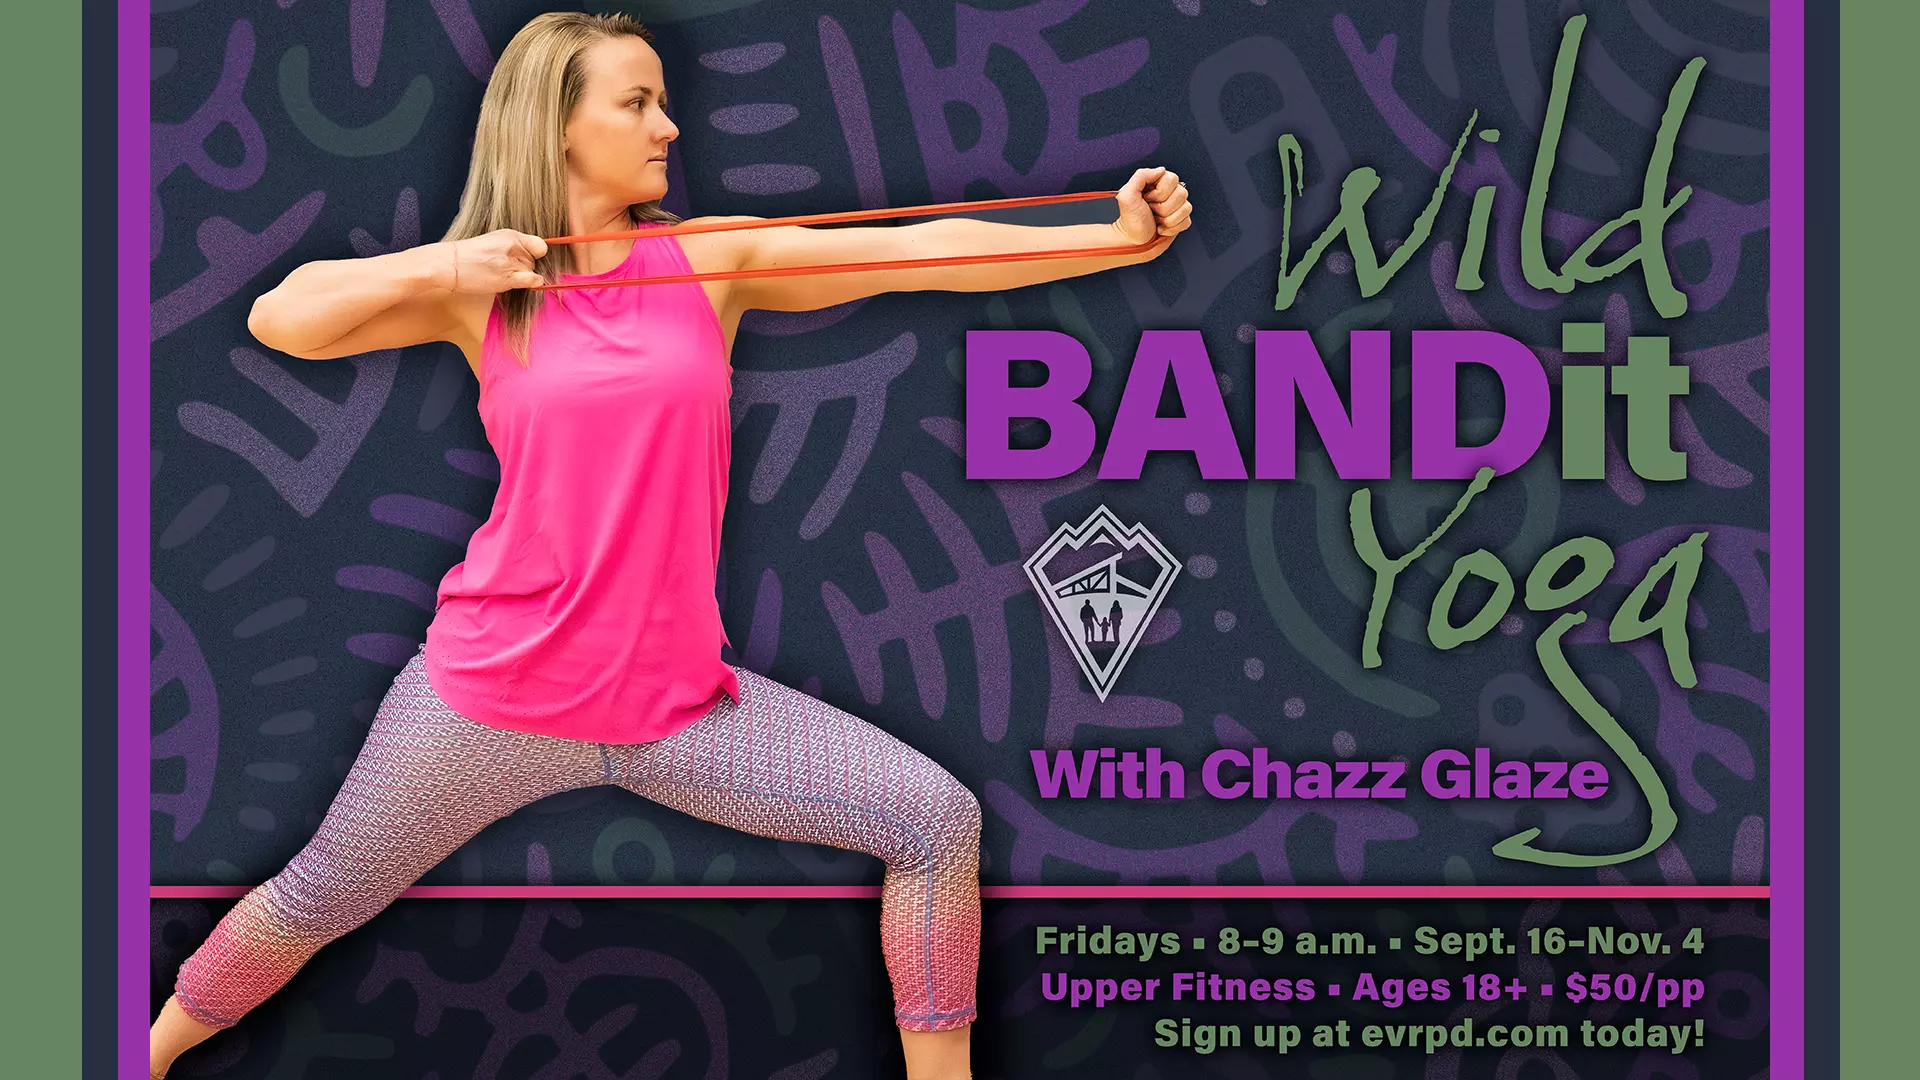 Wild BANDit Yoga with Chazz Glaze